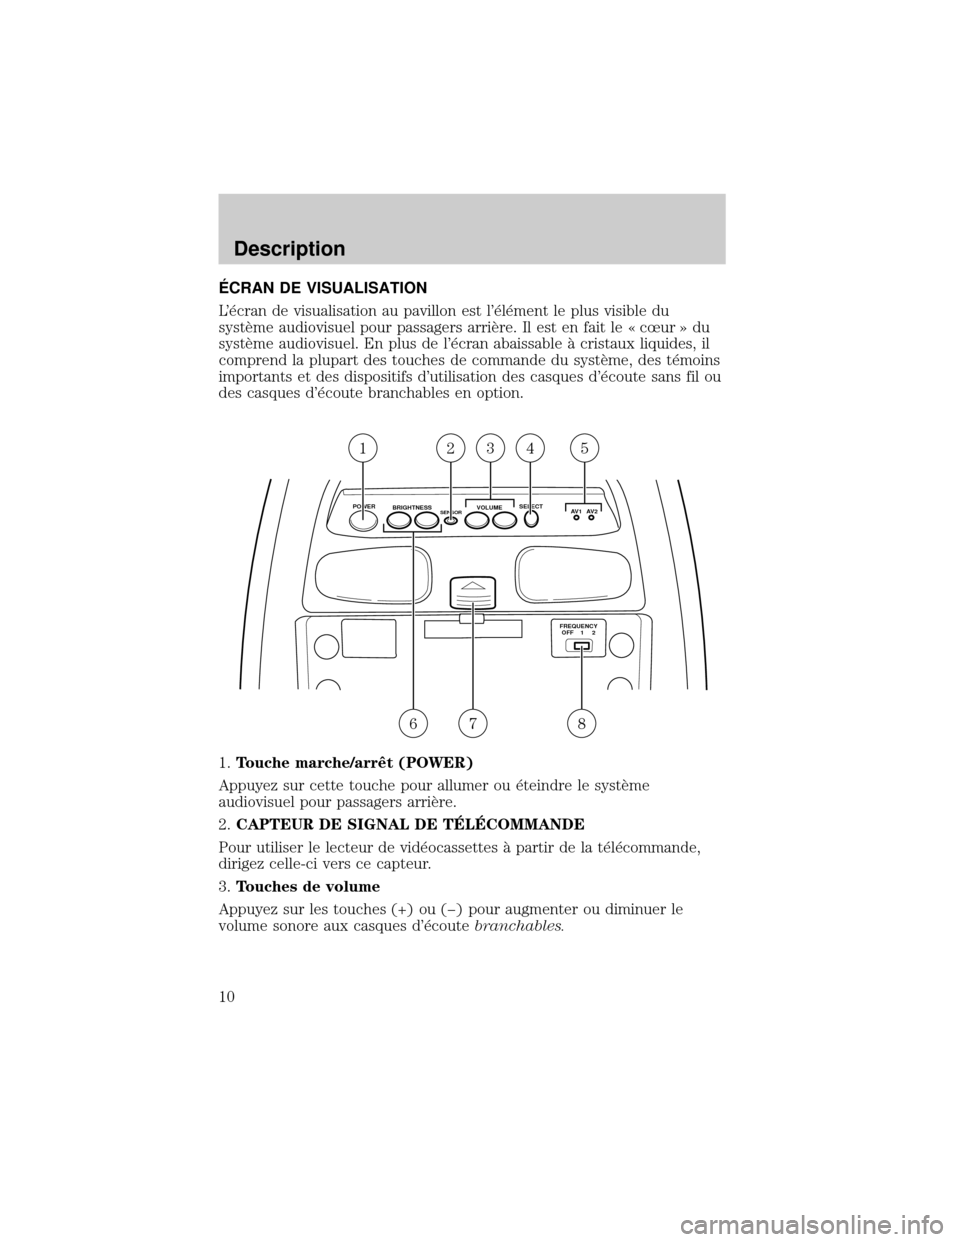 FORD EXPEDITION 2000 1.G Rear Seat Entertainment System Manual ˆCRAN DE VISUALISATION
L×cran de visualisation au pavillon est l×l×ment le plus visible du
systÖme audiovisuel pour passagers arriÖre. Il est en fait le « cúur » du
systÖme audiovisuel. En